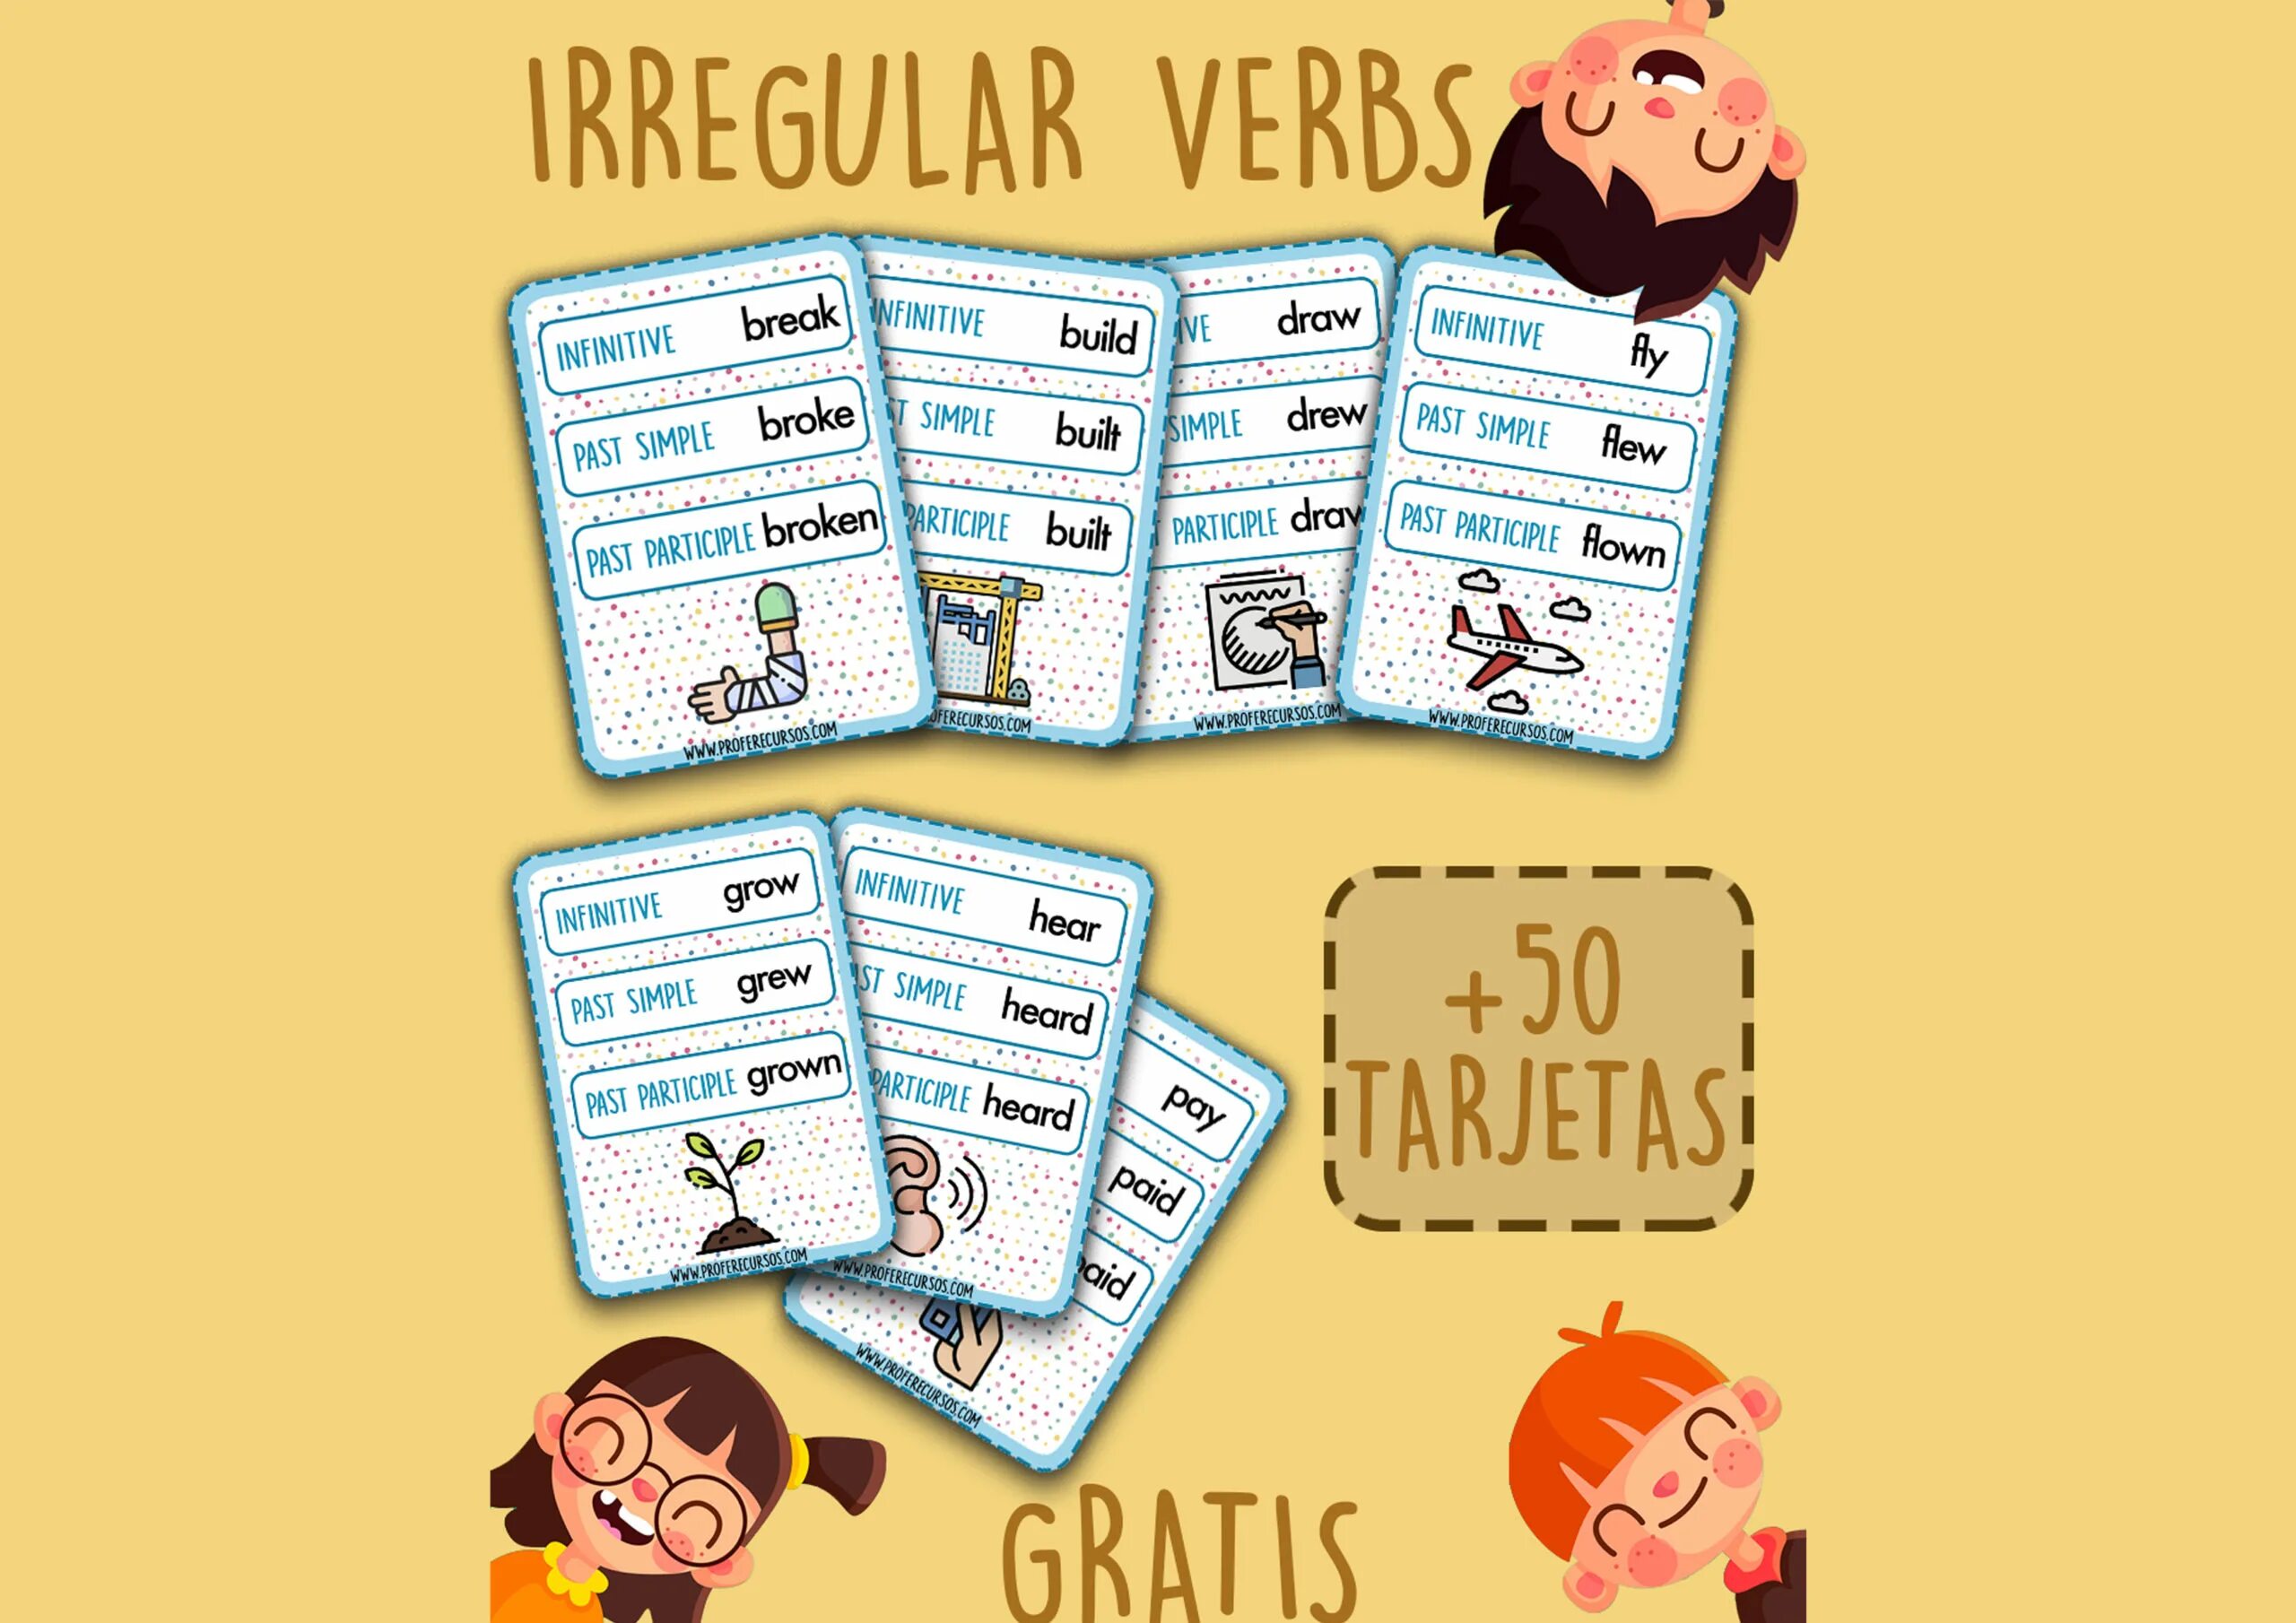 Song irregular. Irregular verbs карточки. Past simple Irregular verbs карточки. Irregular verbs game. Irregular verbs Cards.